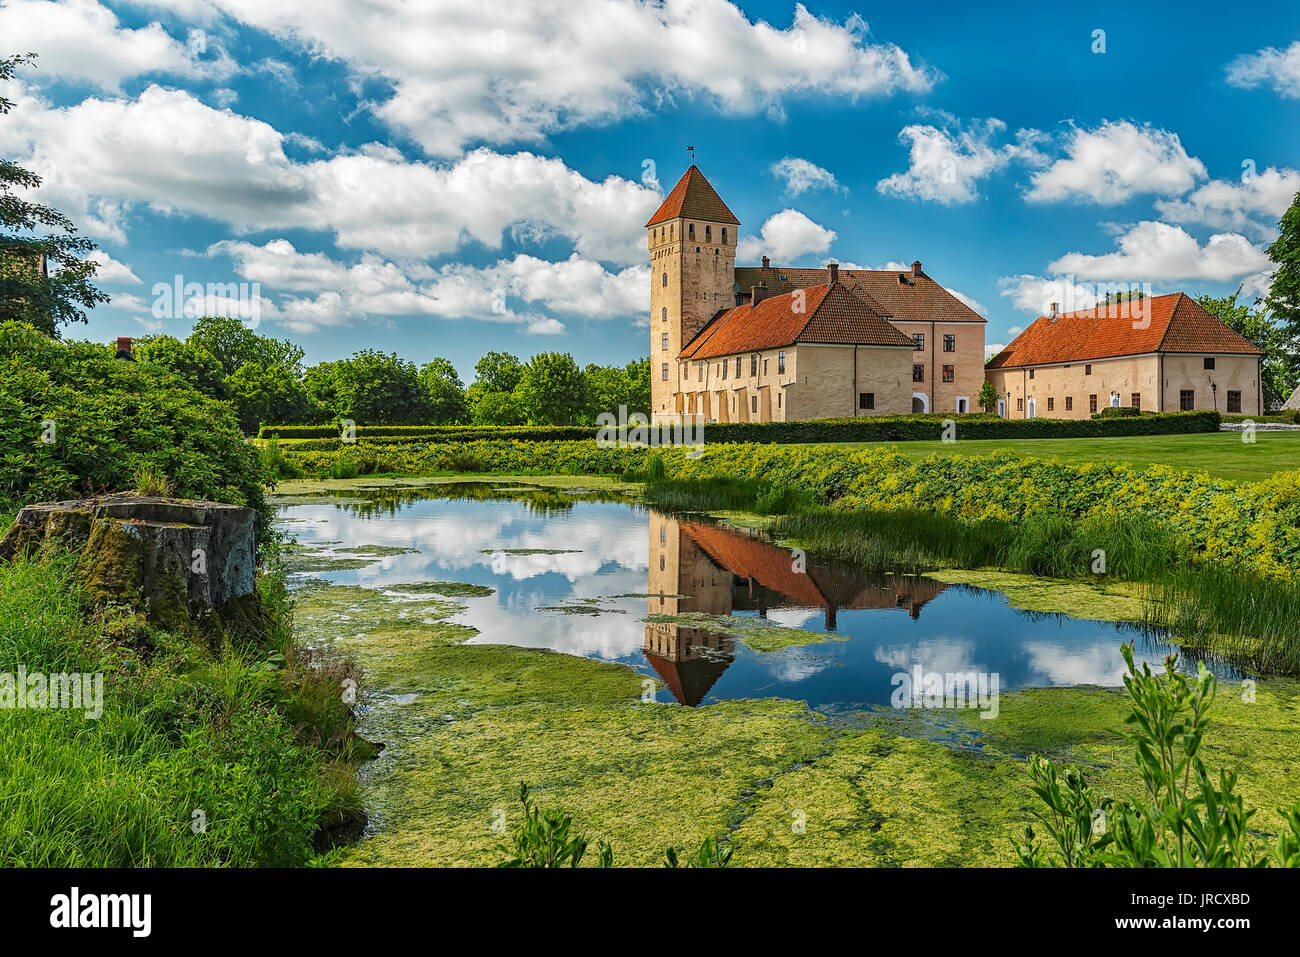 Immagine di Tosterup castello medievale in Skane, Svezia. Foto Stock